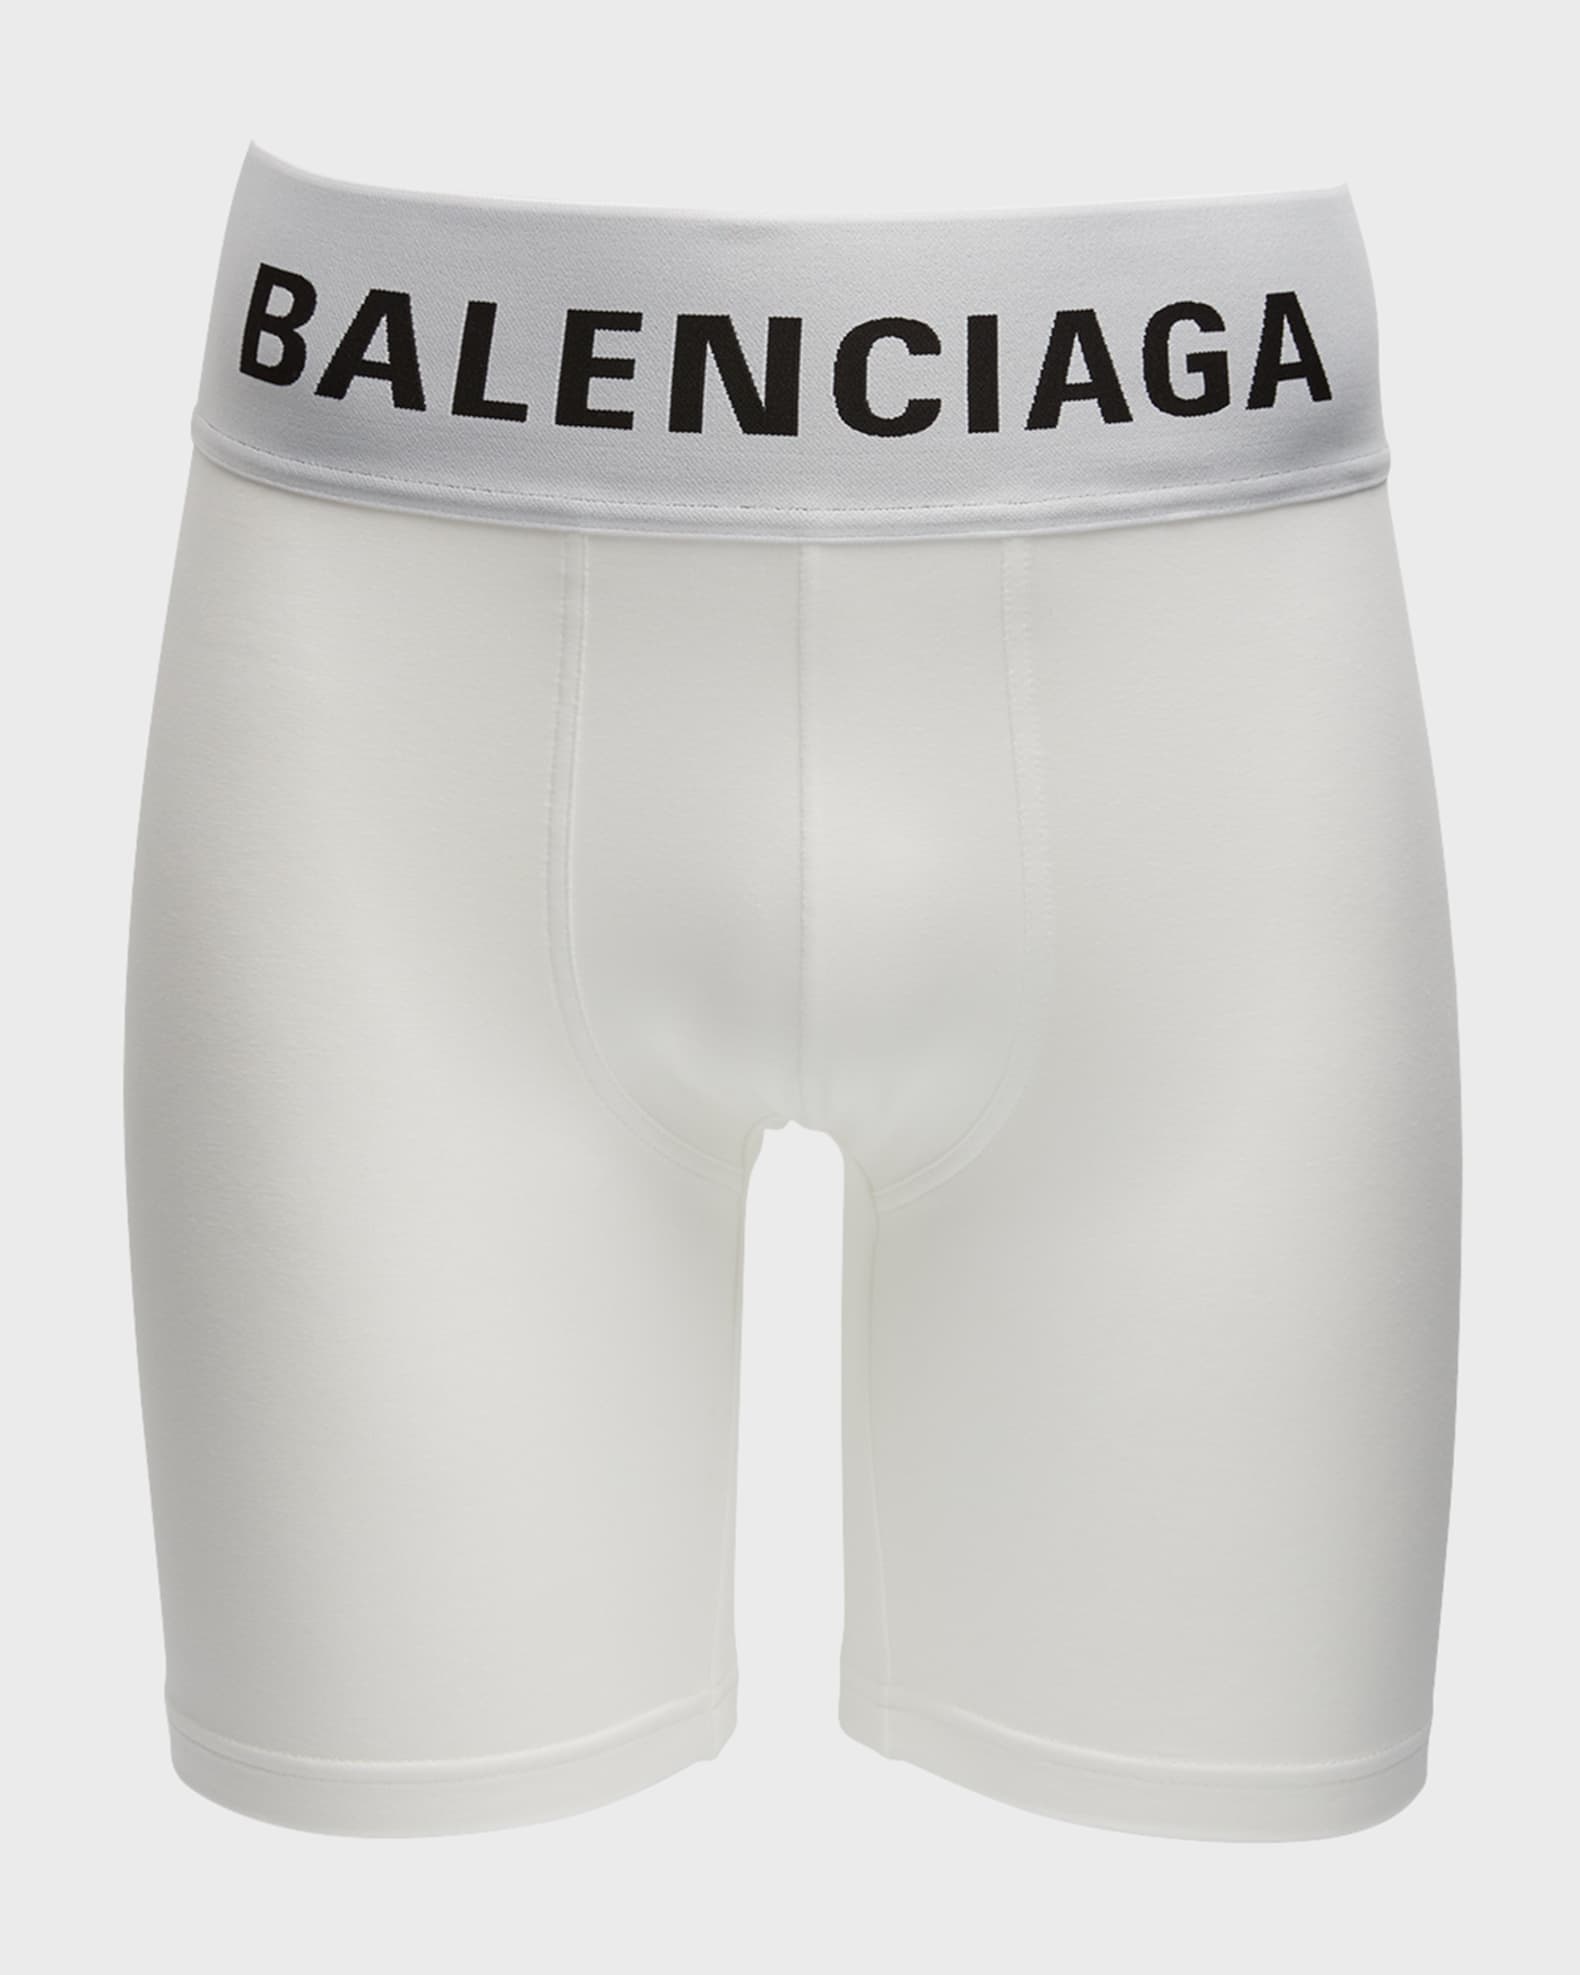 Balenciaga Men's Boxers